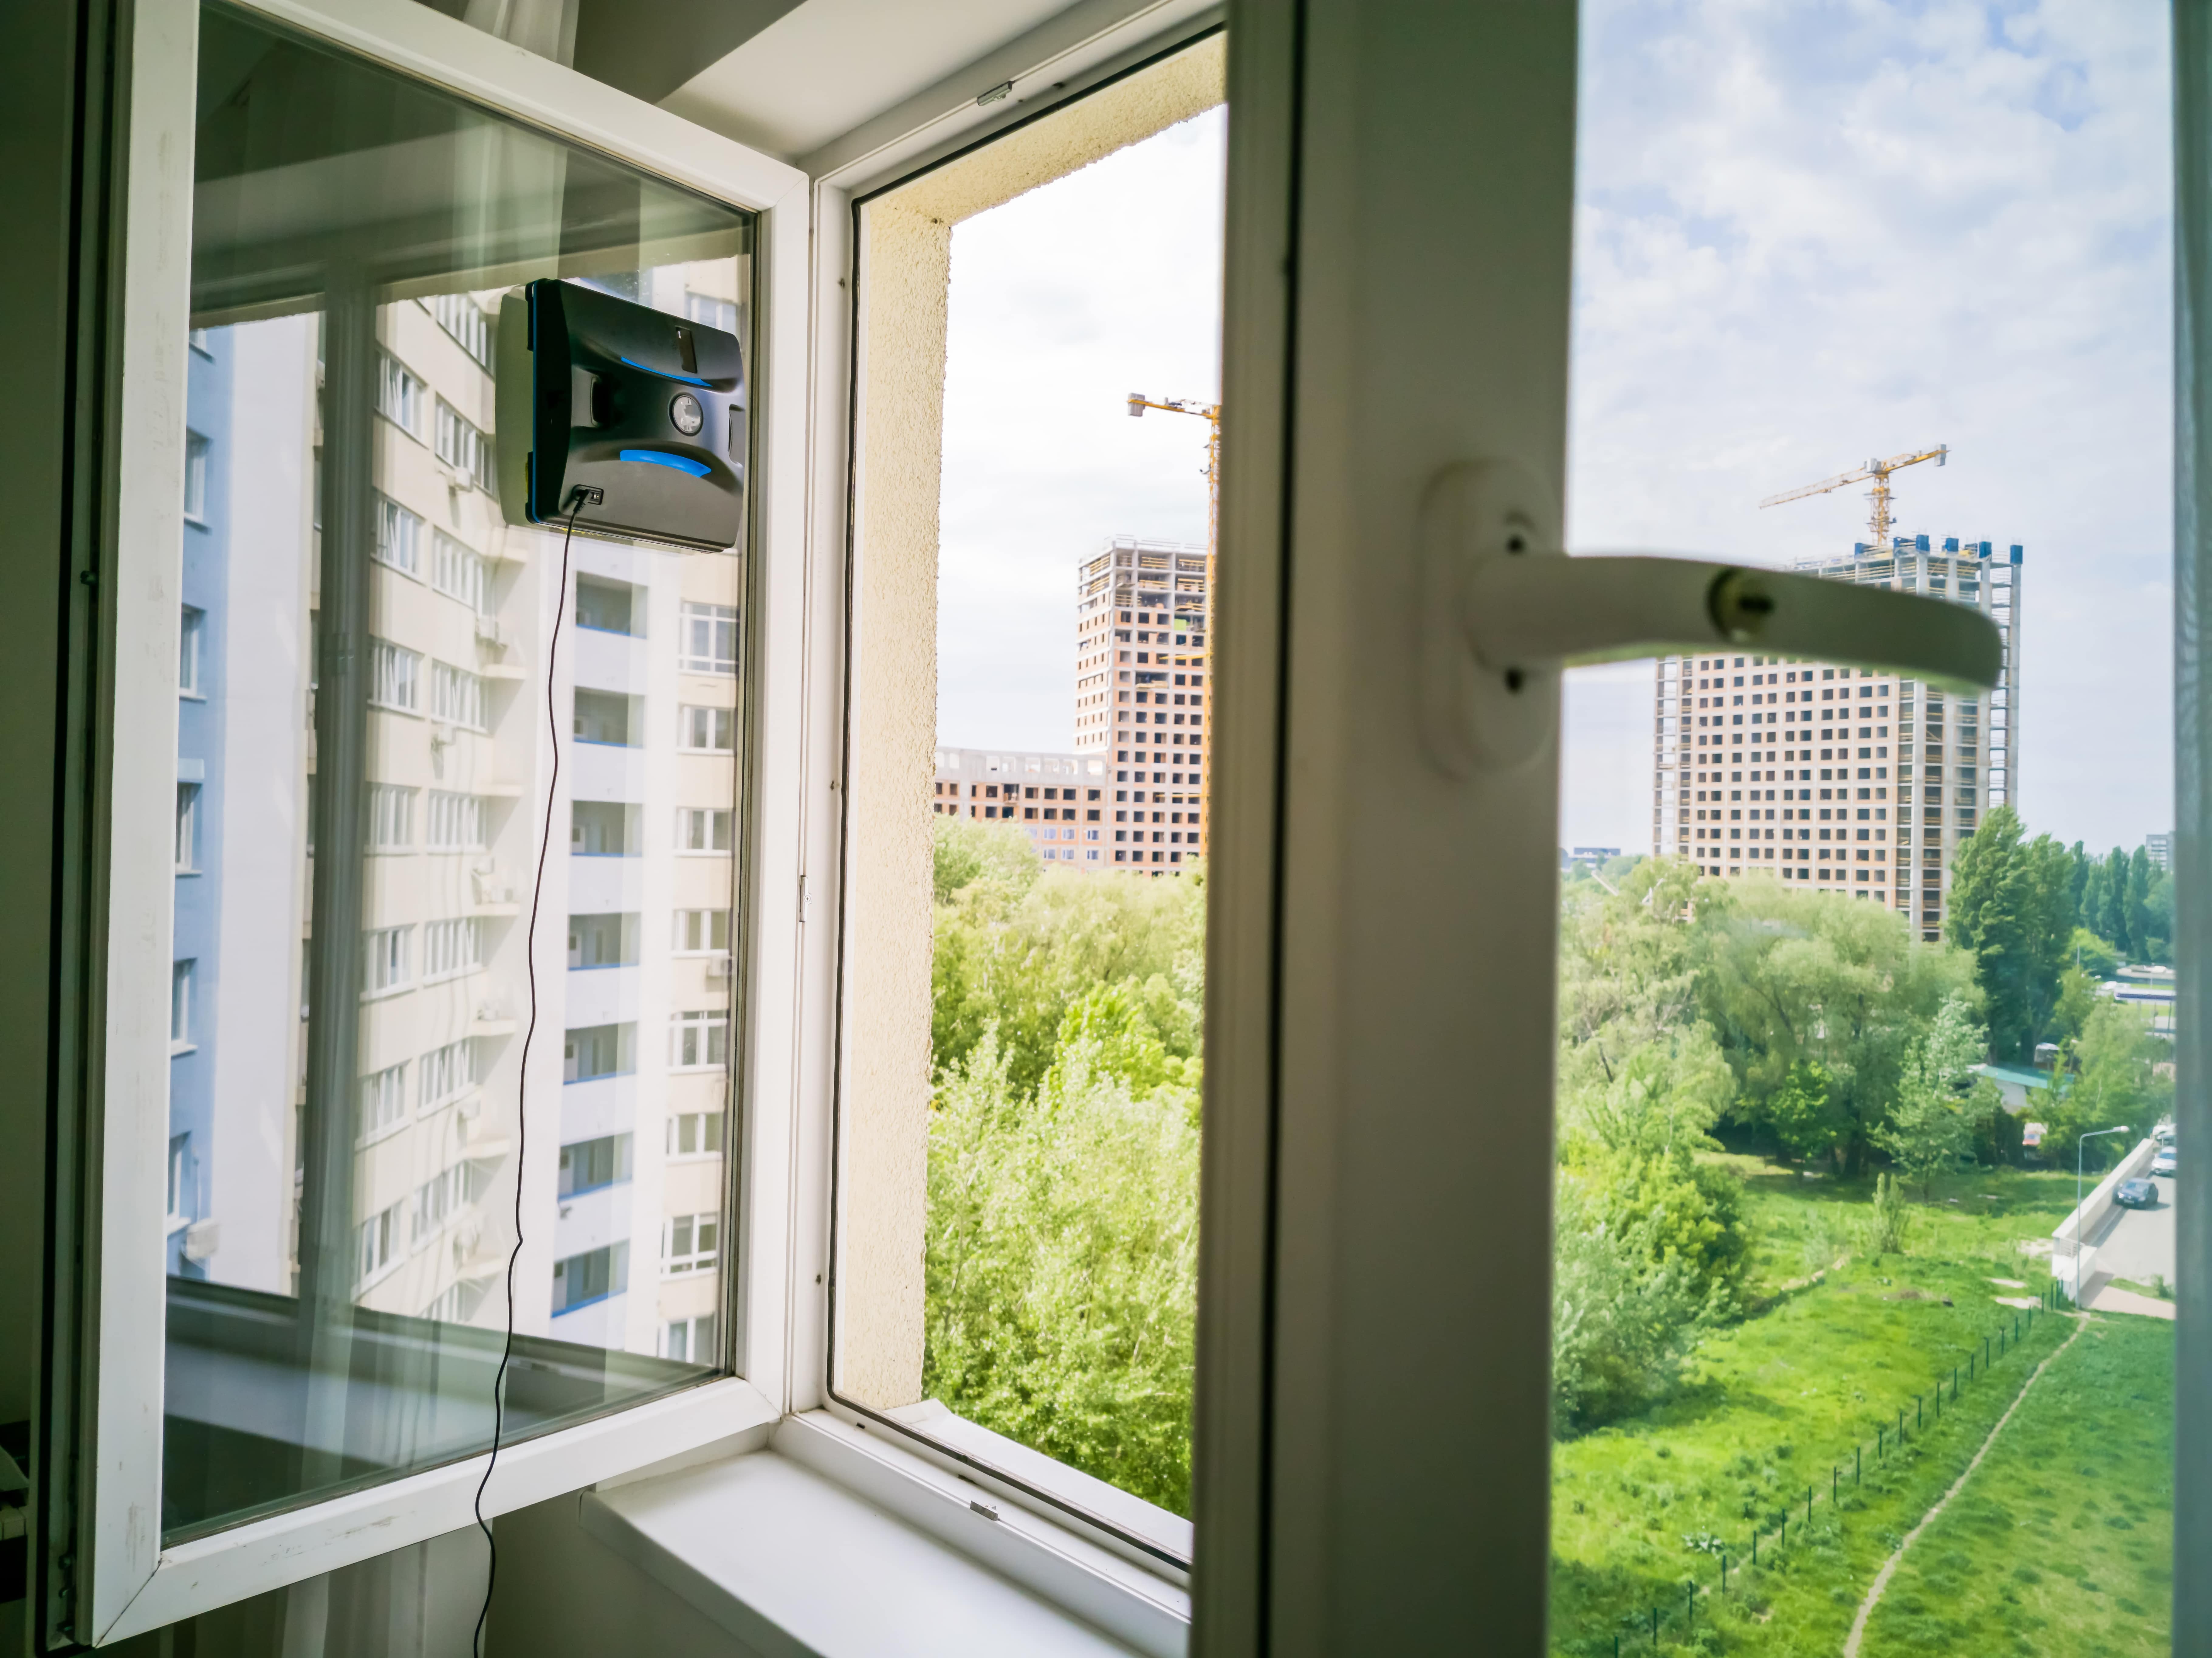 lihtne võumalus aknaid pesta aknapesurobotiga